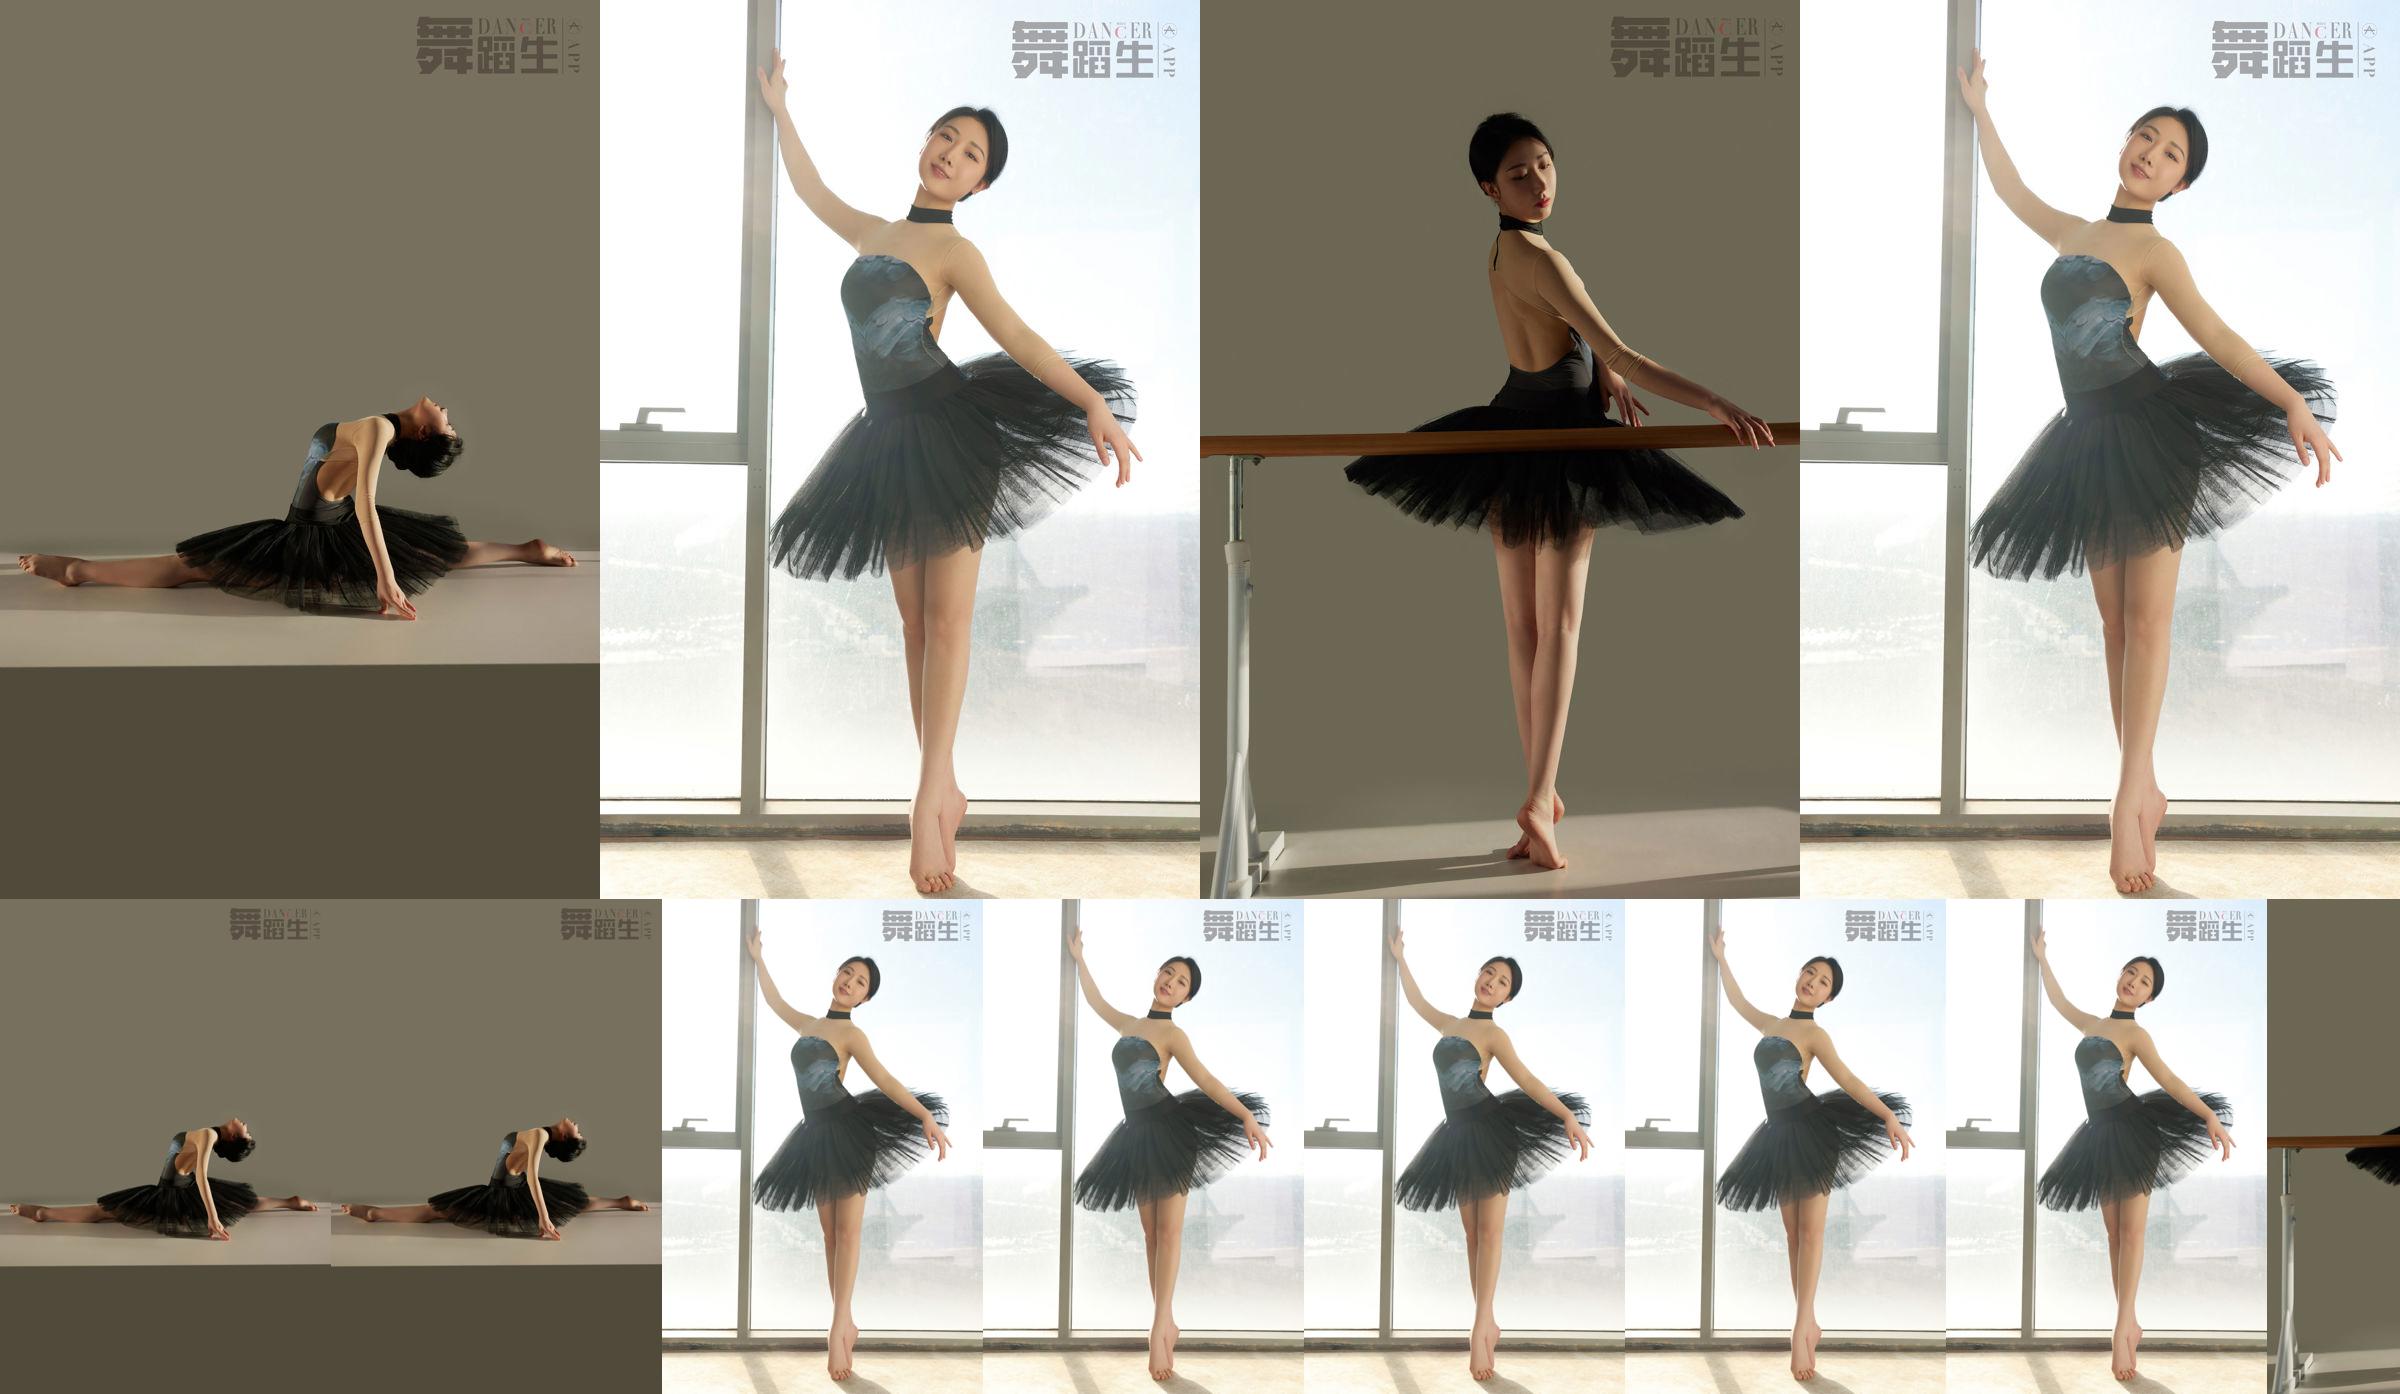 [Carrie Galli] Dagboek van een dansstudent 088 Xue Hui No.987e8c Pagina 3